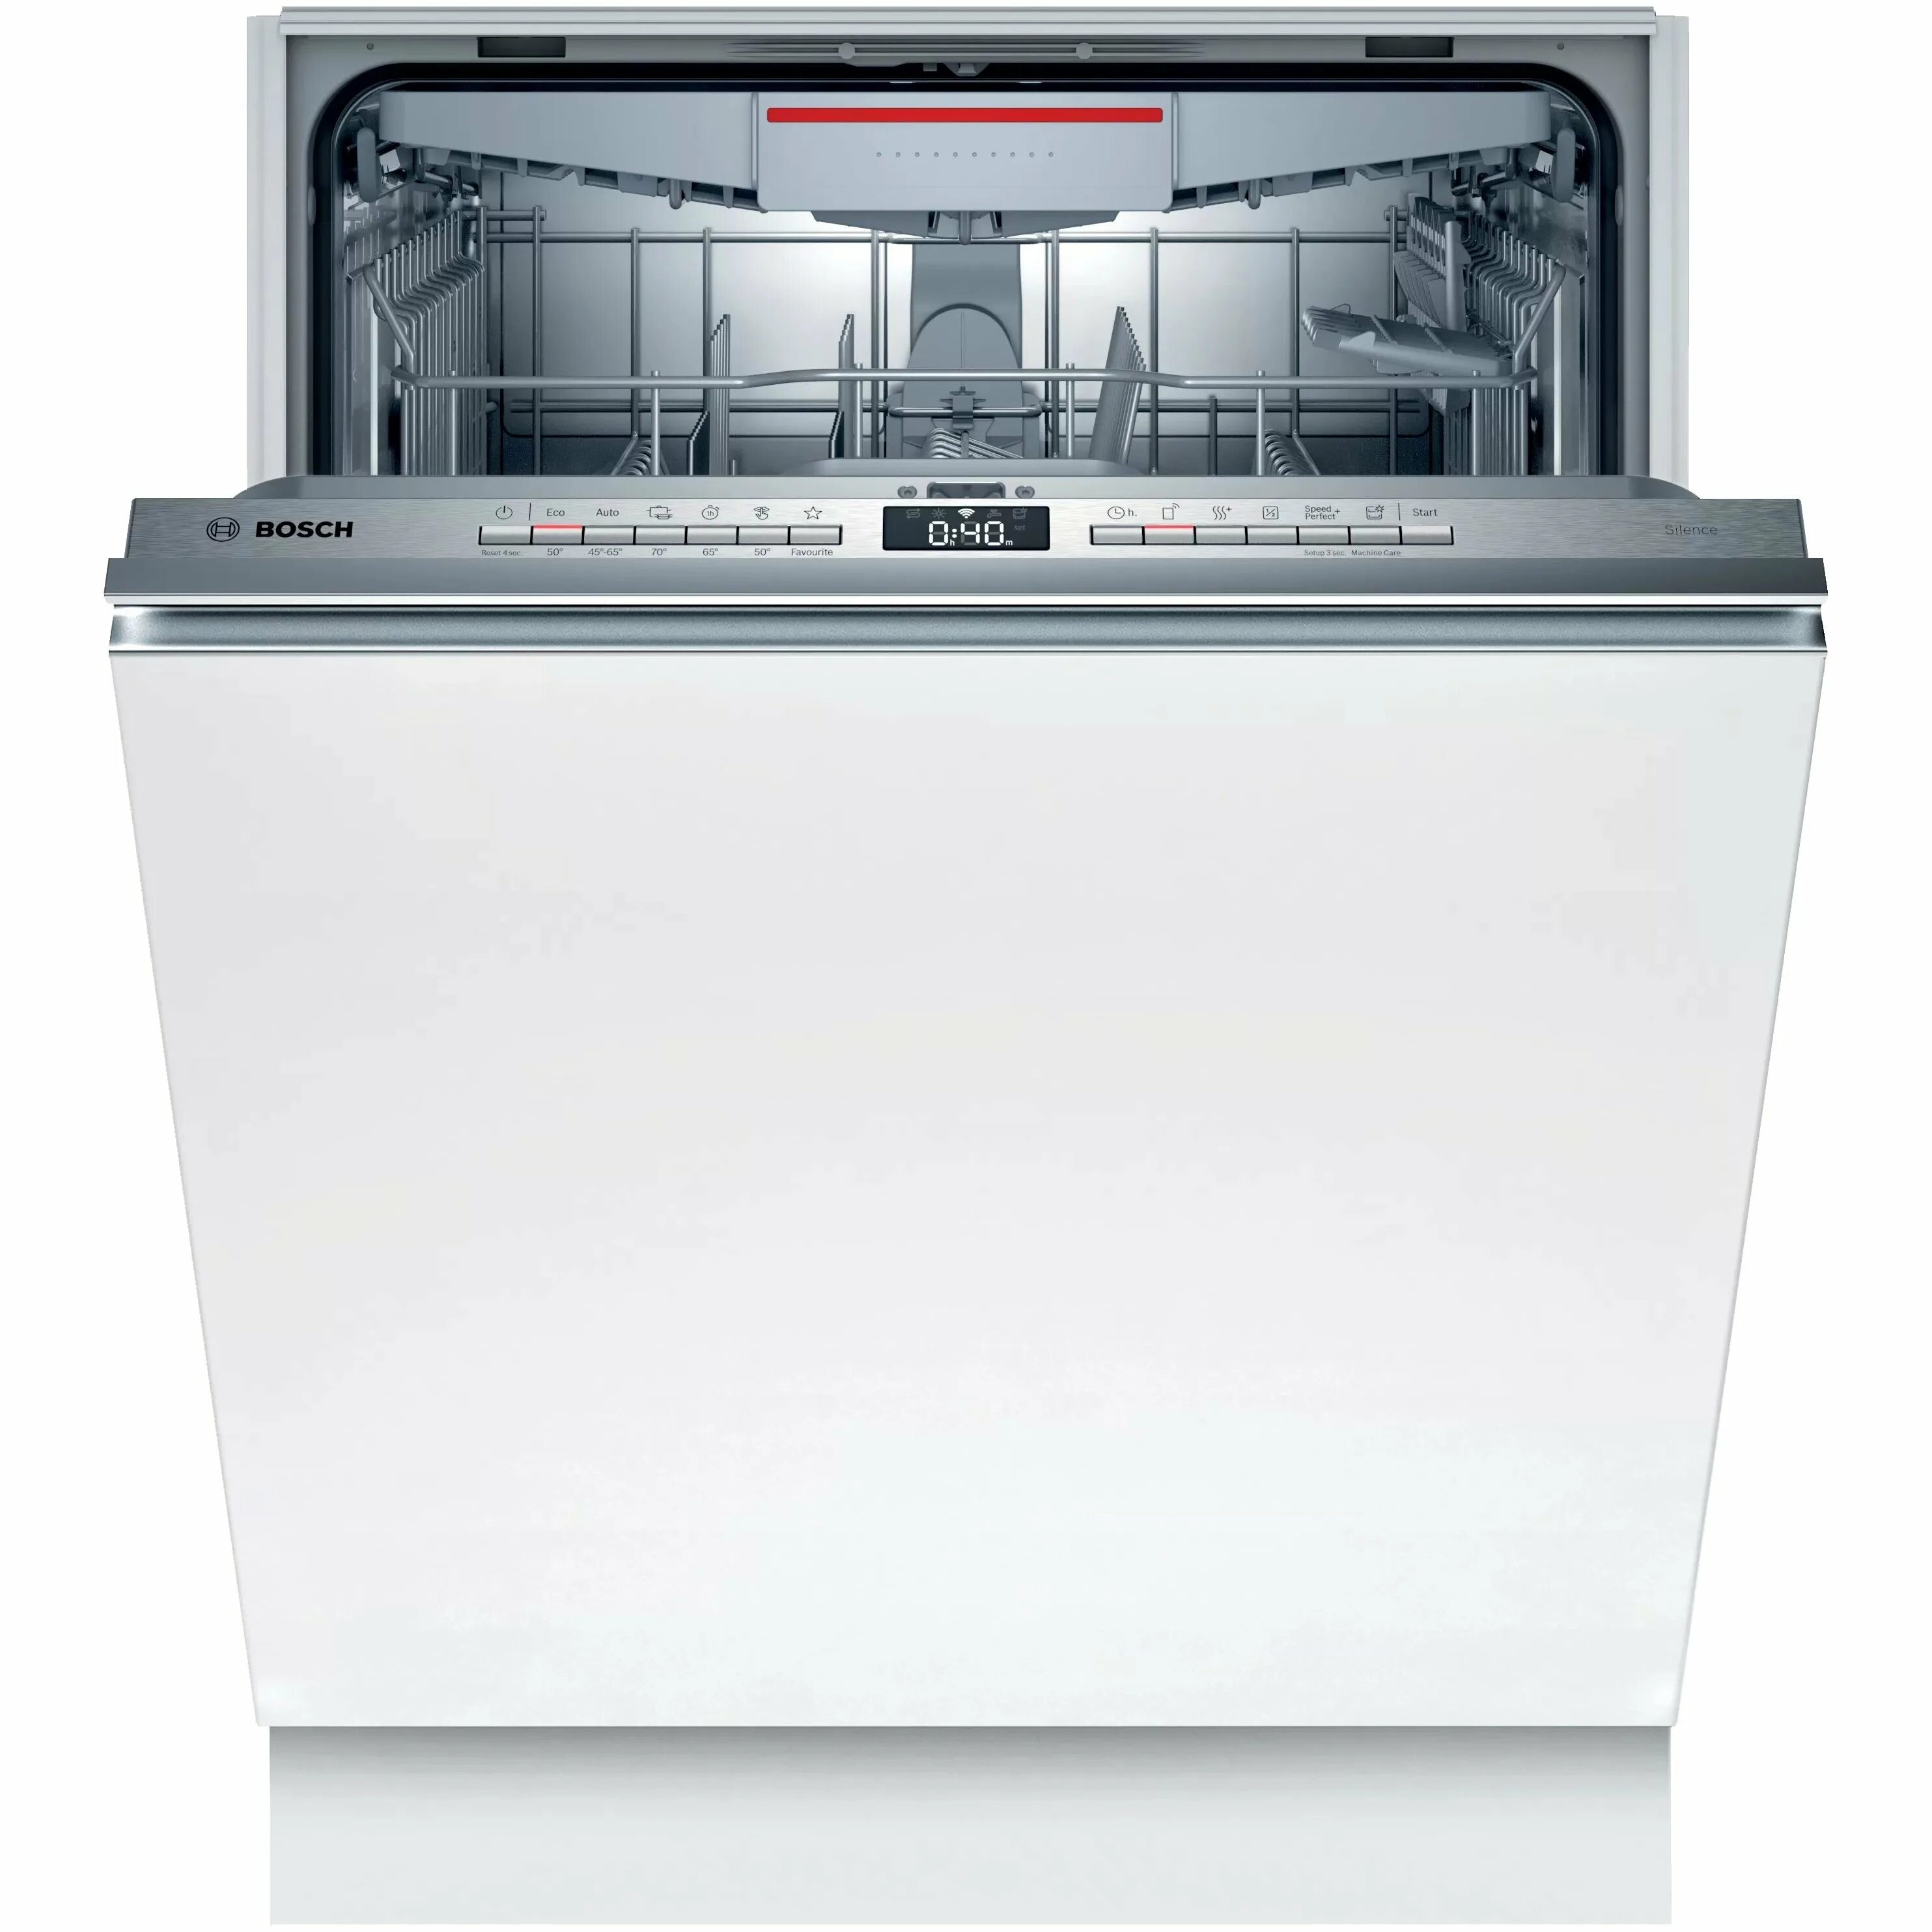 Лучшие посудомоечные машины отзывы покупателей. Bosch spv6hmx1mr. Встраиваемая посудомоечная машина Bosch spv2ikx10e. Посудомоечная машина Bosch spv2imy2er. Встраиваемая посудомоечная машина 60 см Bosch serie|4 sgv4hmx3fr.